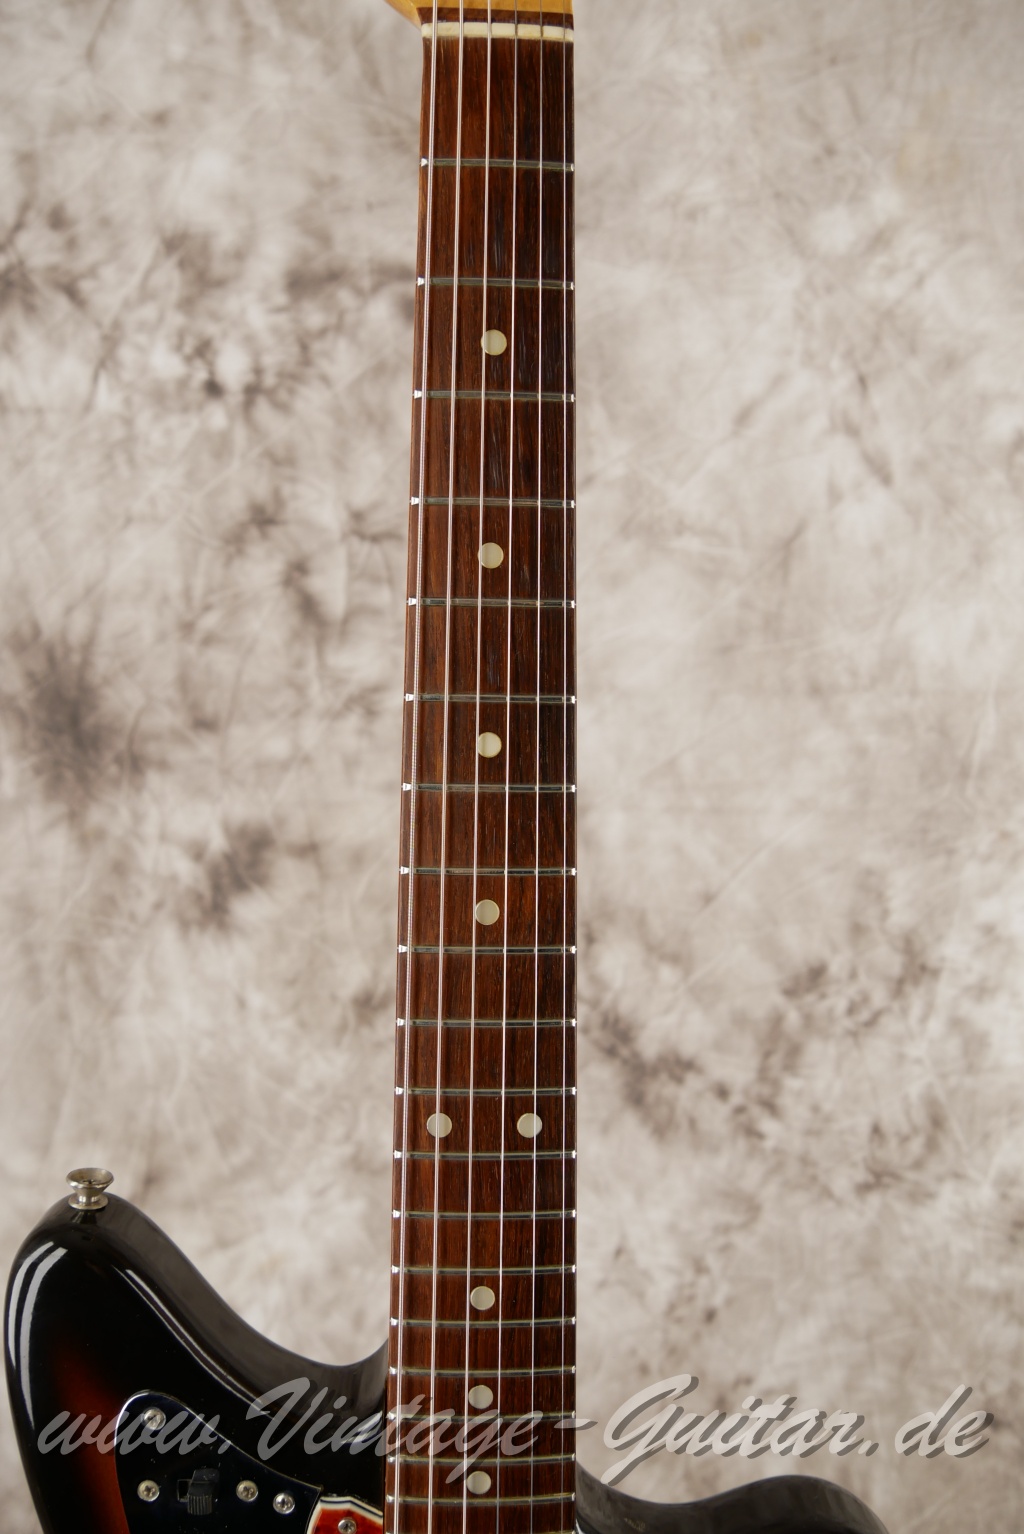 Fender_Jaguar_sunburst_1965_brown_case-005.JPG